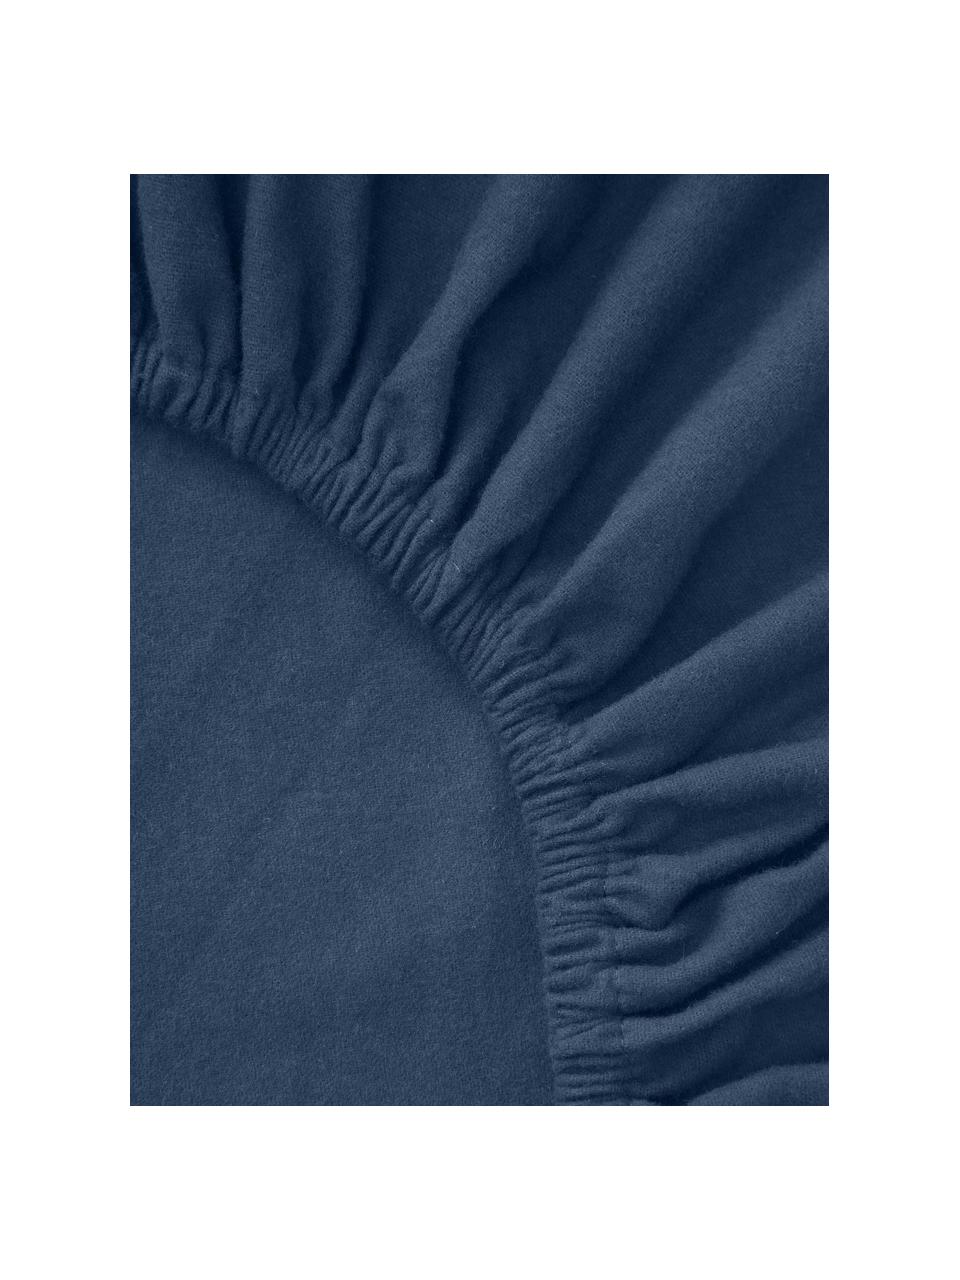 Flanelové napínací prostěradlo Biba, Námořnická modrá, Š 90 cm, D 200 cm, V 25 cm